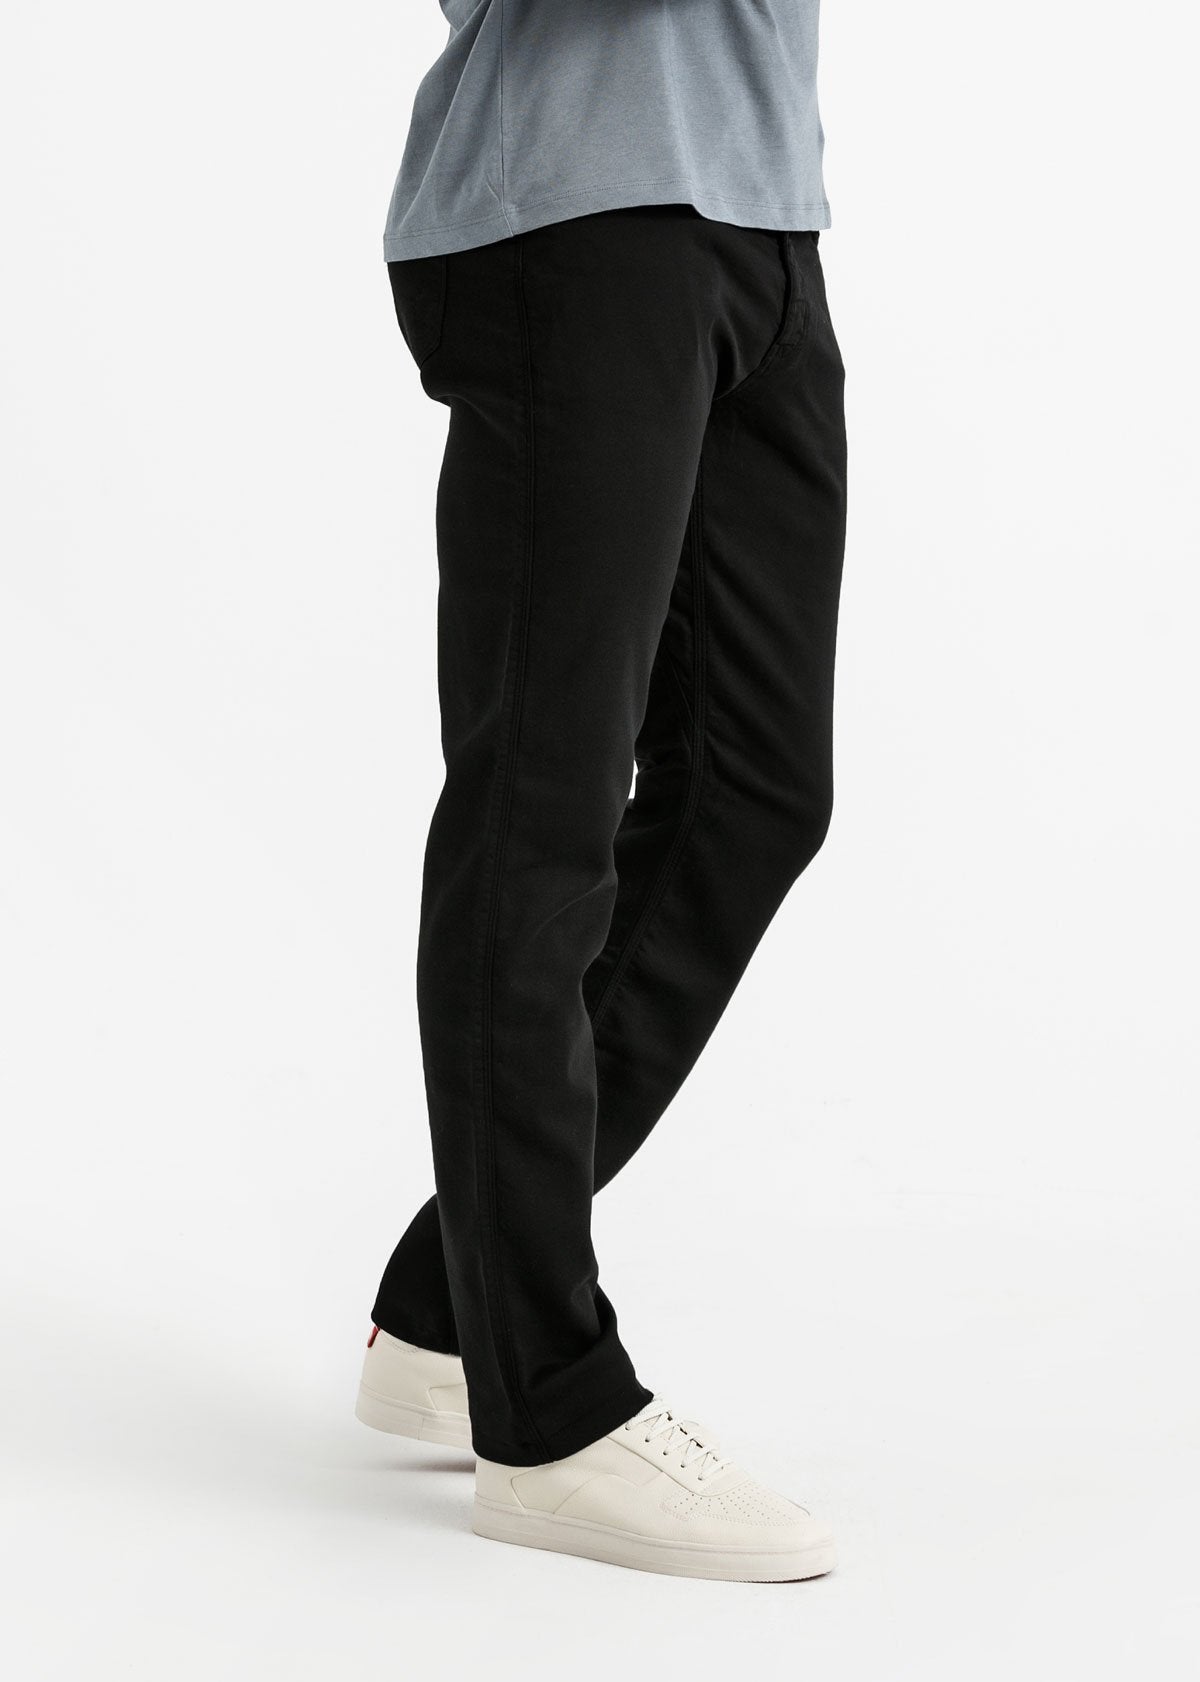 Men's Black Slim Fit Dress Sweatpant